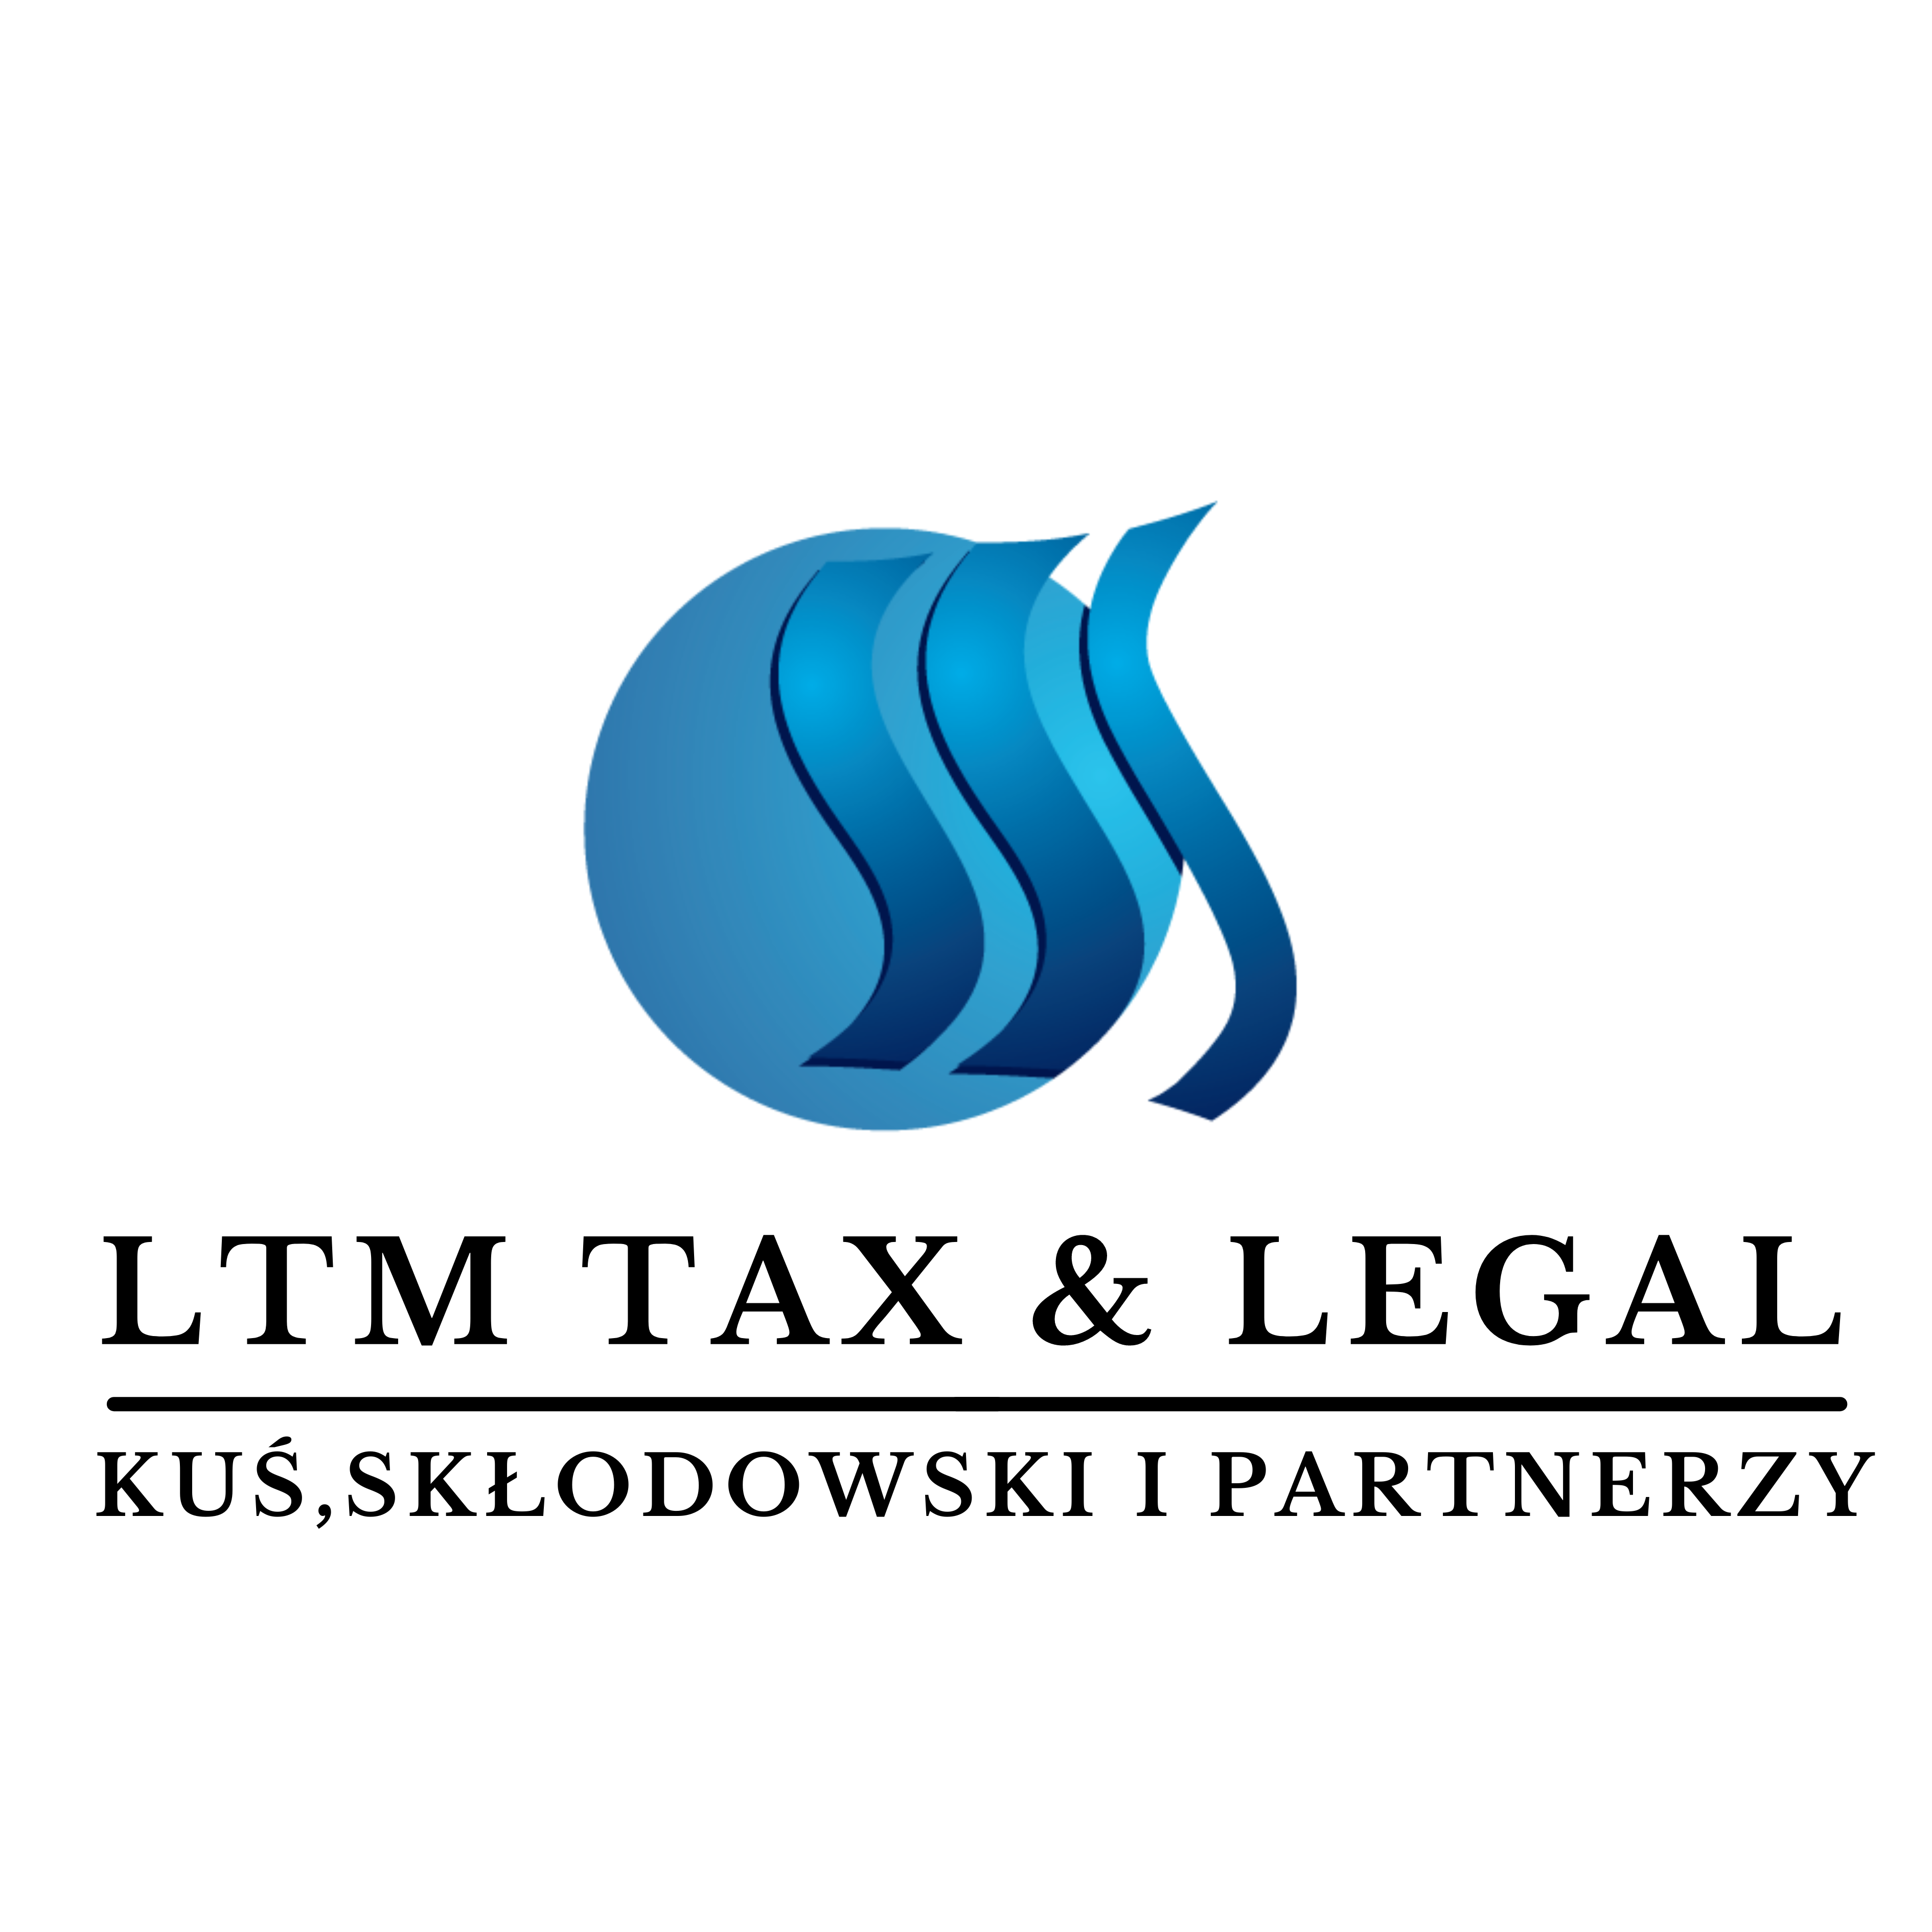 LTM Tax and Legal